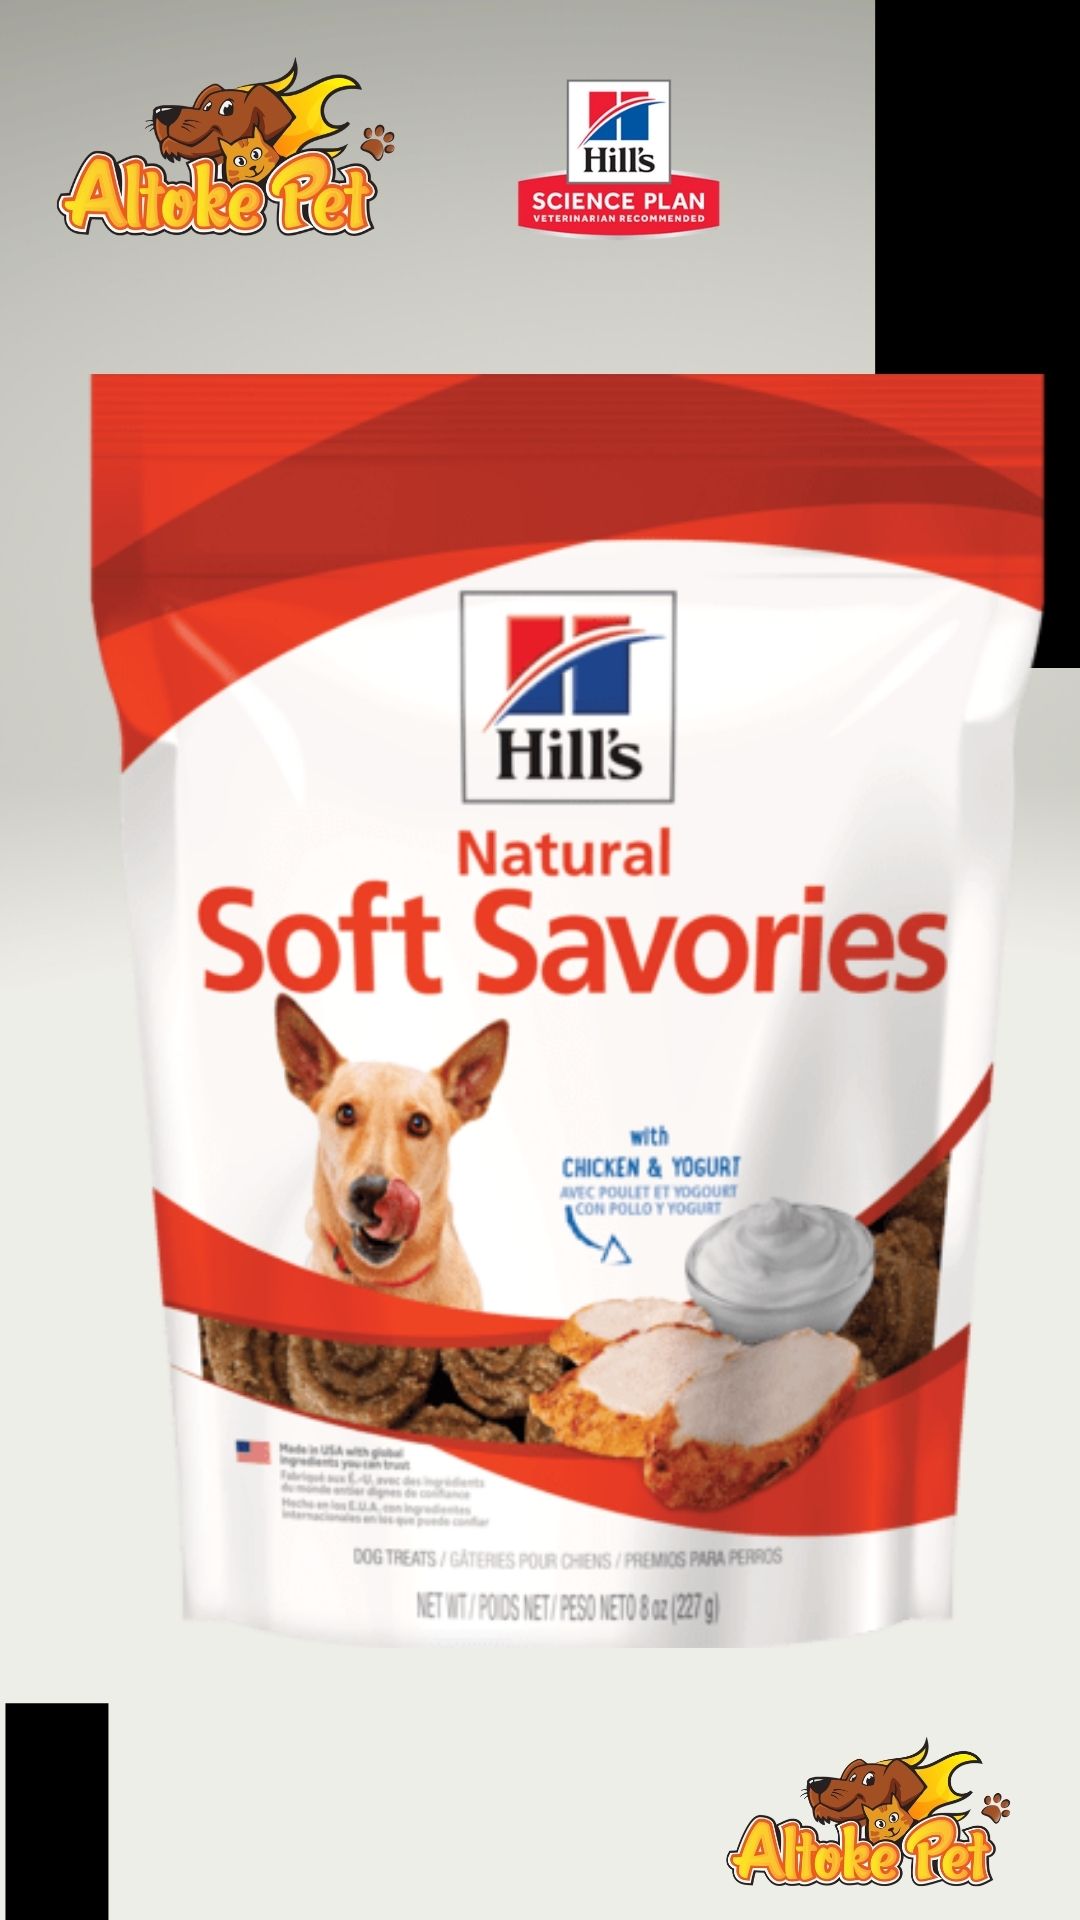 Hill's Natural Soft Savories Chicken & Yogurt